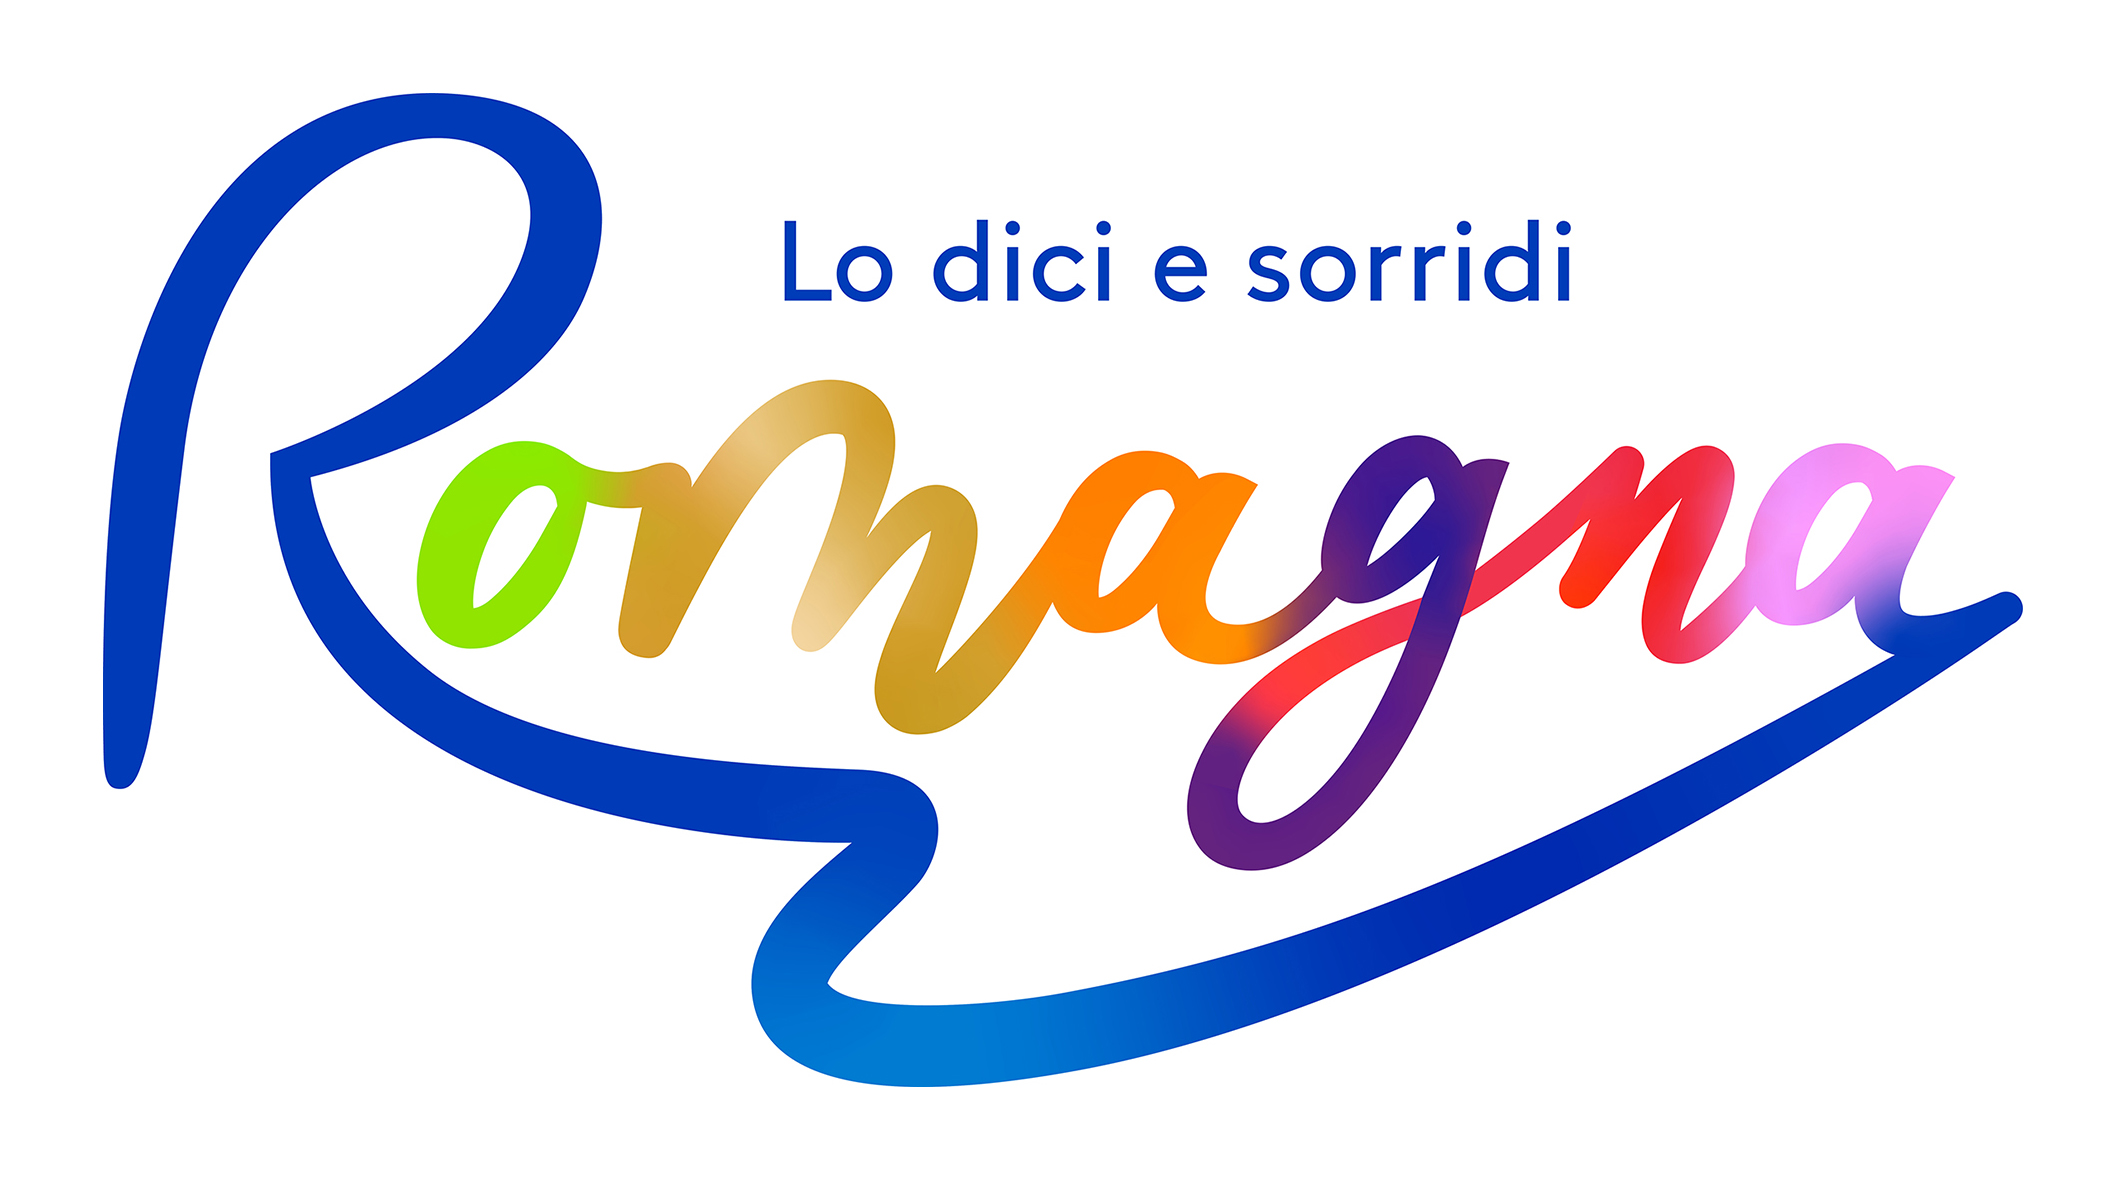 Visit Romagna debutta in comunicazione: la Brand image porta la firma di Expansion Group.